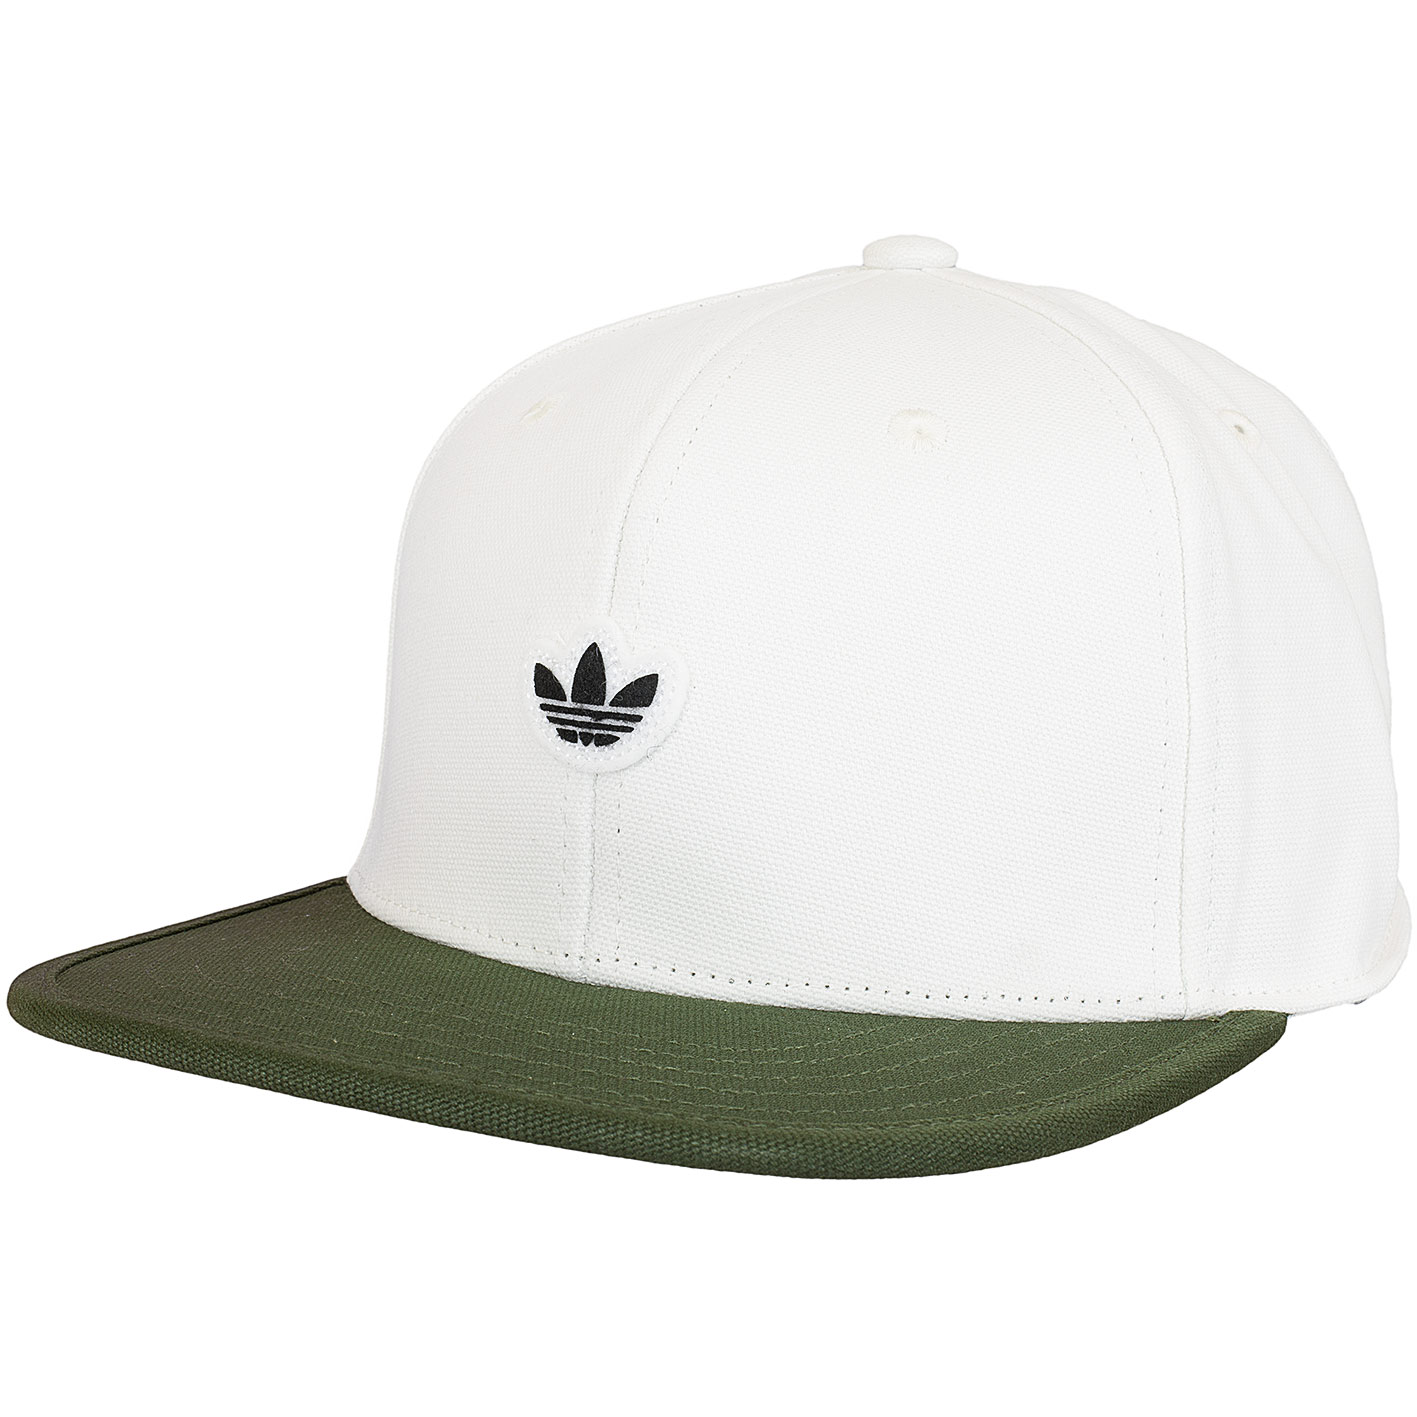 ☆ Adidas Originals Snapback Cap 6Panel Unstructured weiß/oliv - hier  bestellen!